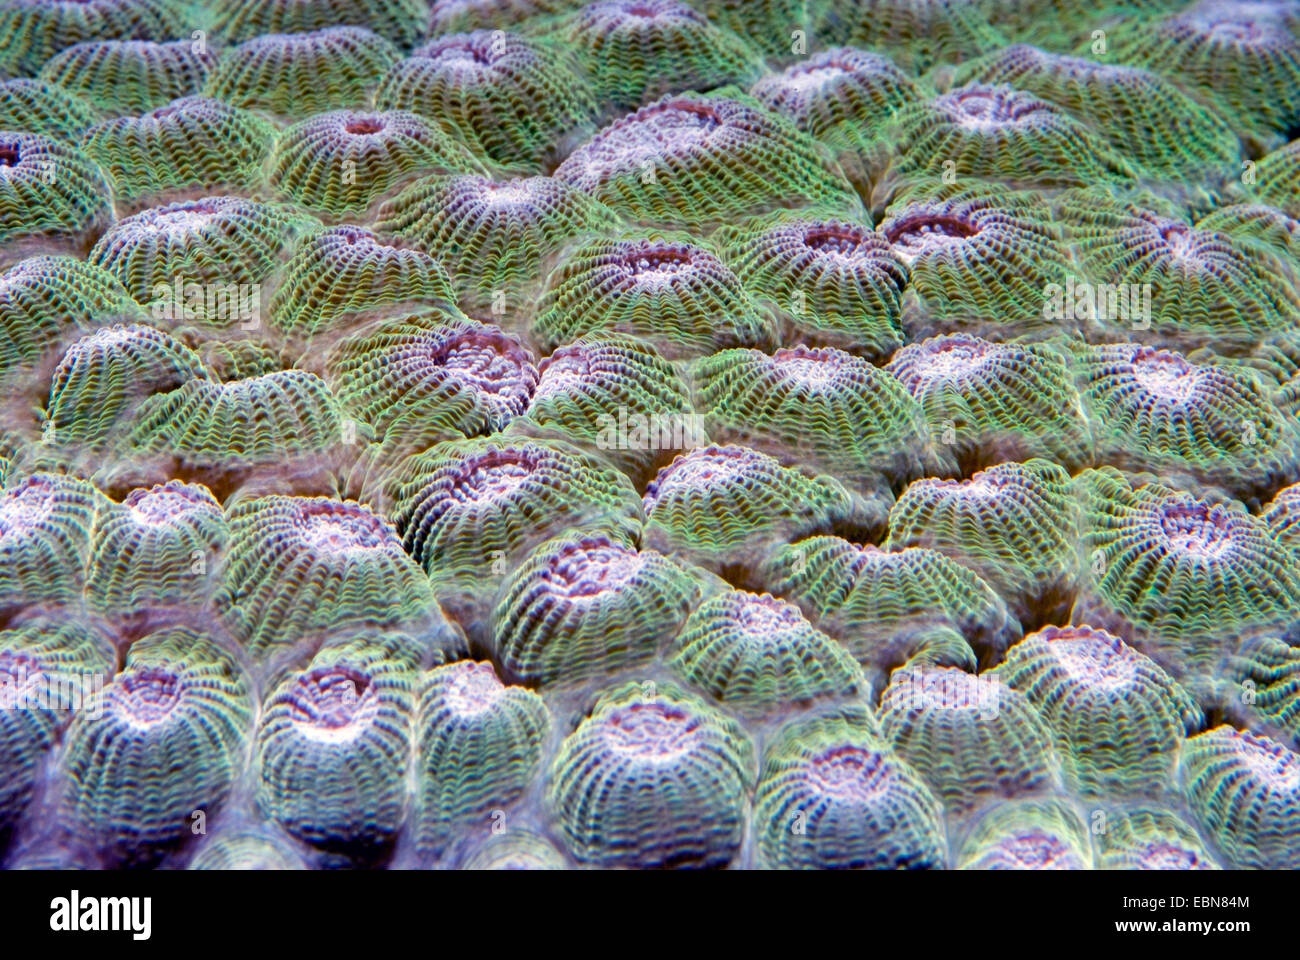 (Diploastrea heliopora corales pétreos), macro shot Foto de stock